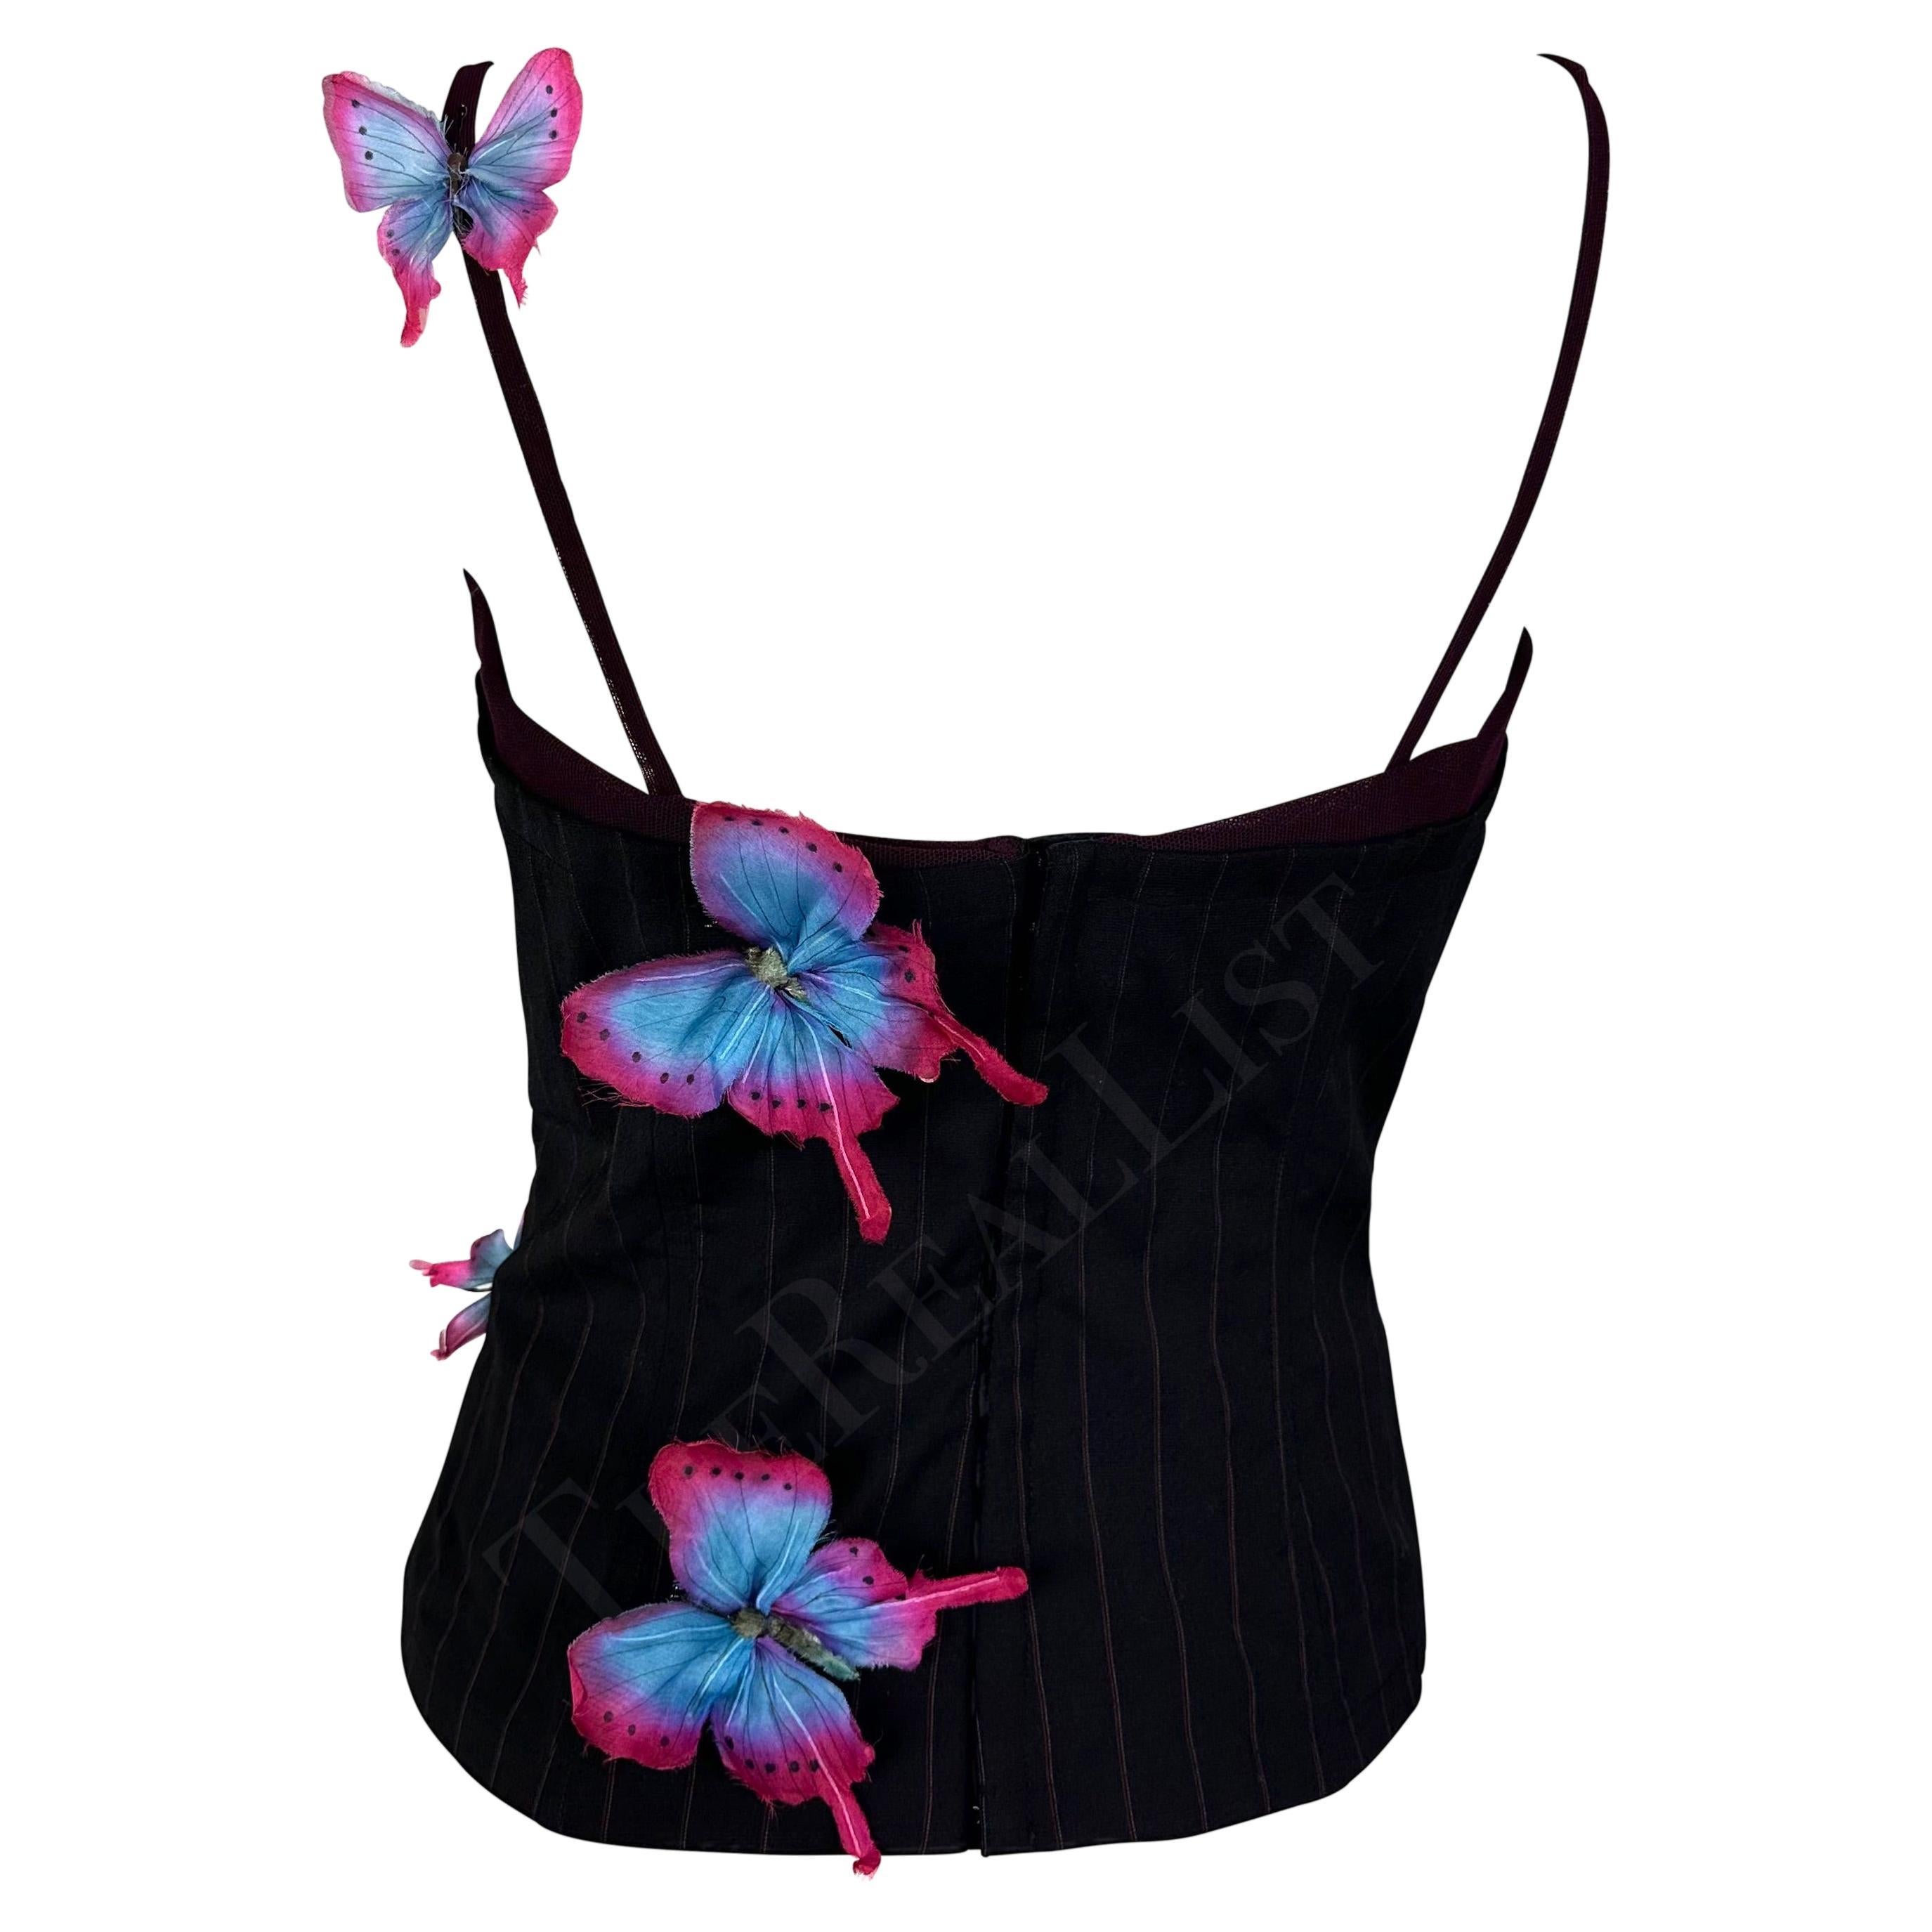 S/S 1998 Dolce & Gabbana Runway Pinstripe Butterfly Applique Boned Tank Top